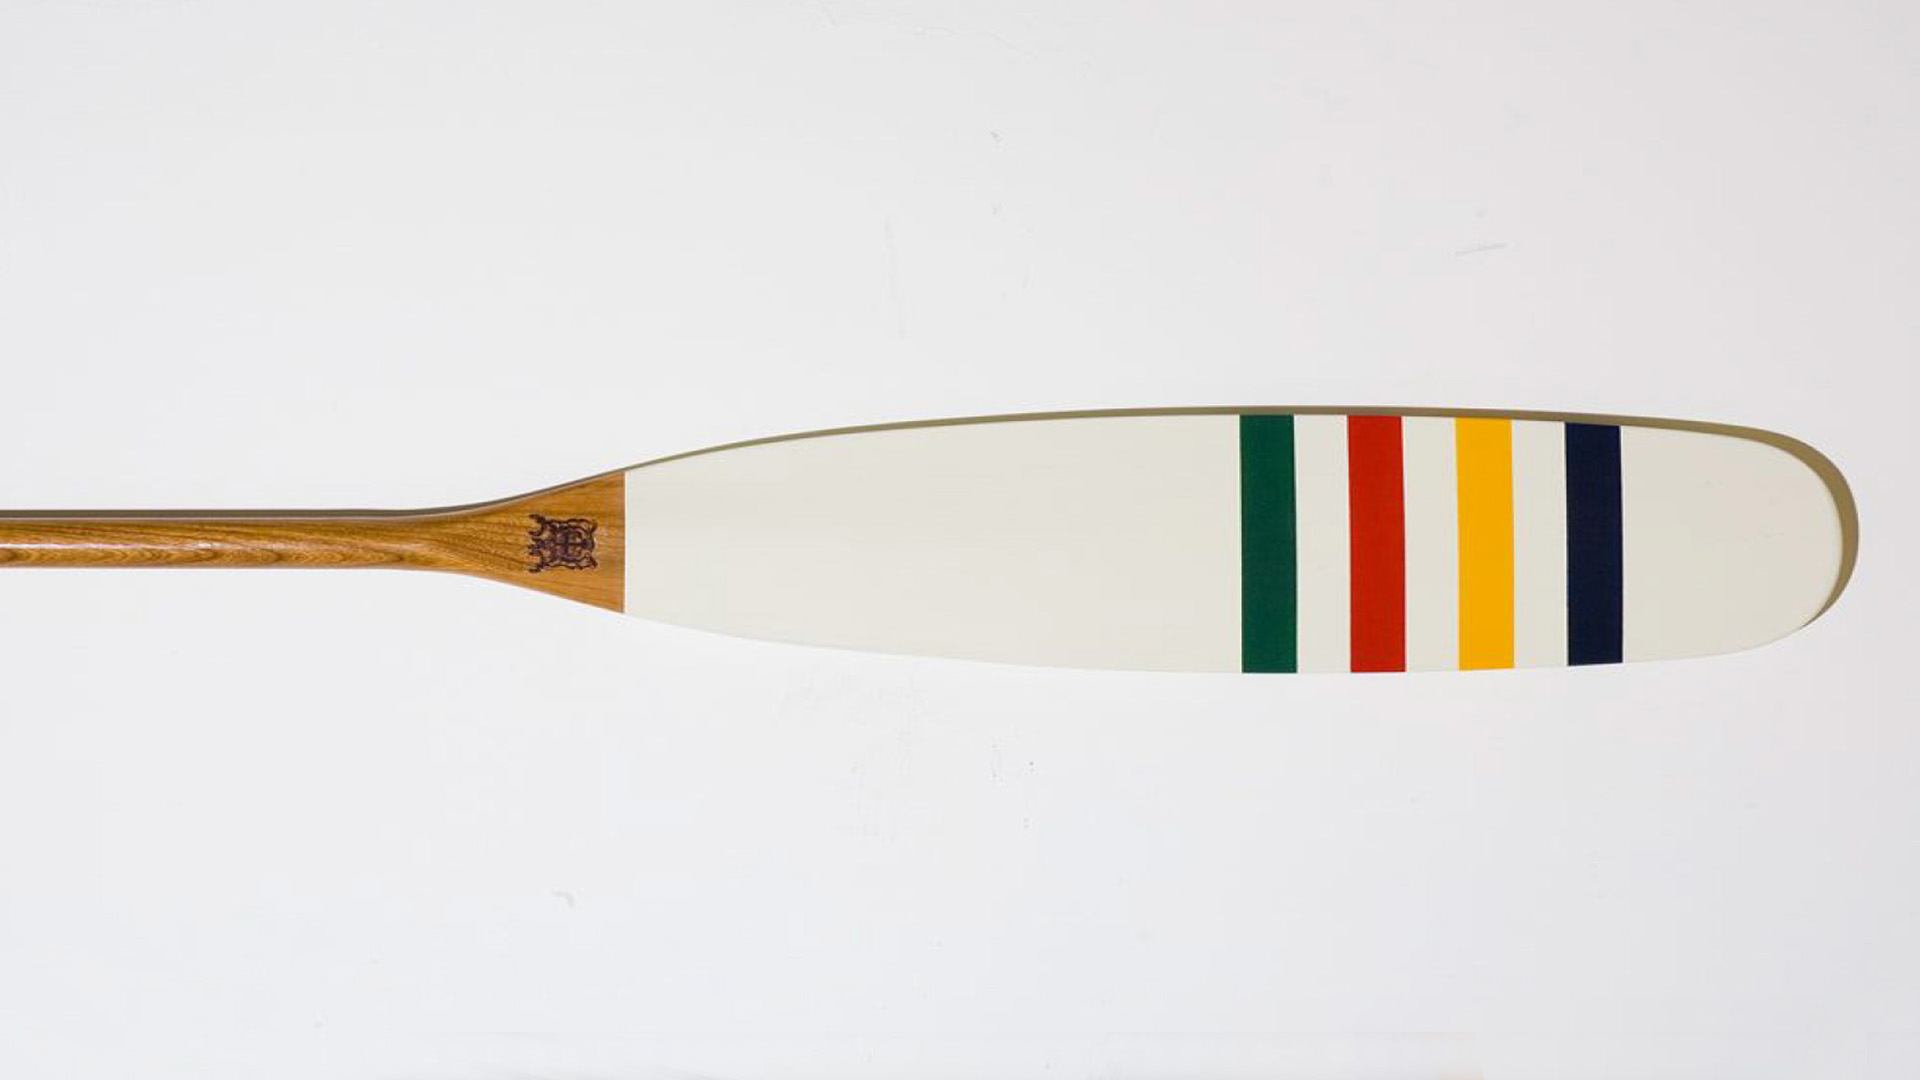 Boston East striped oar